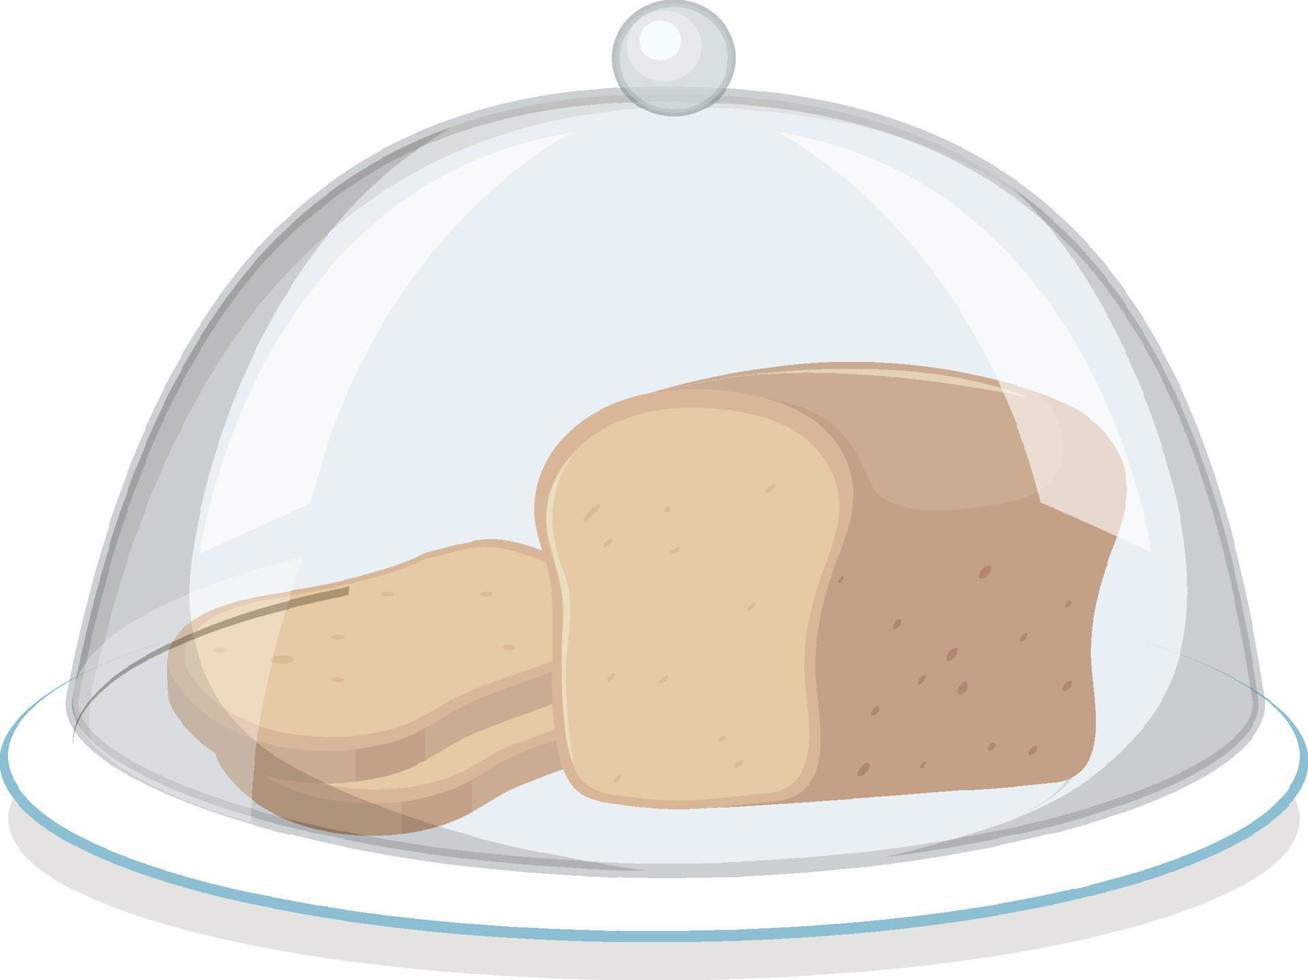 Brot auf runder Platte mit Glasabdeckung auf weißem Hintergrund vektor